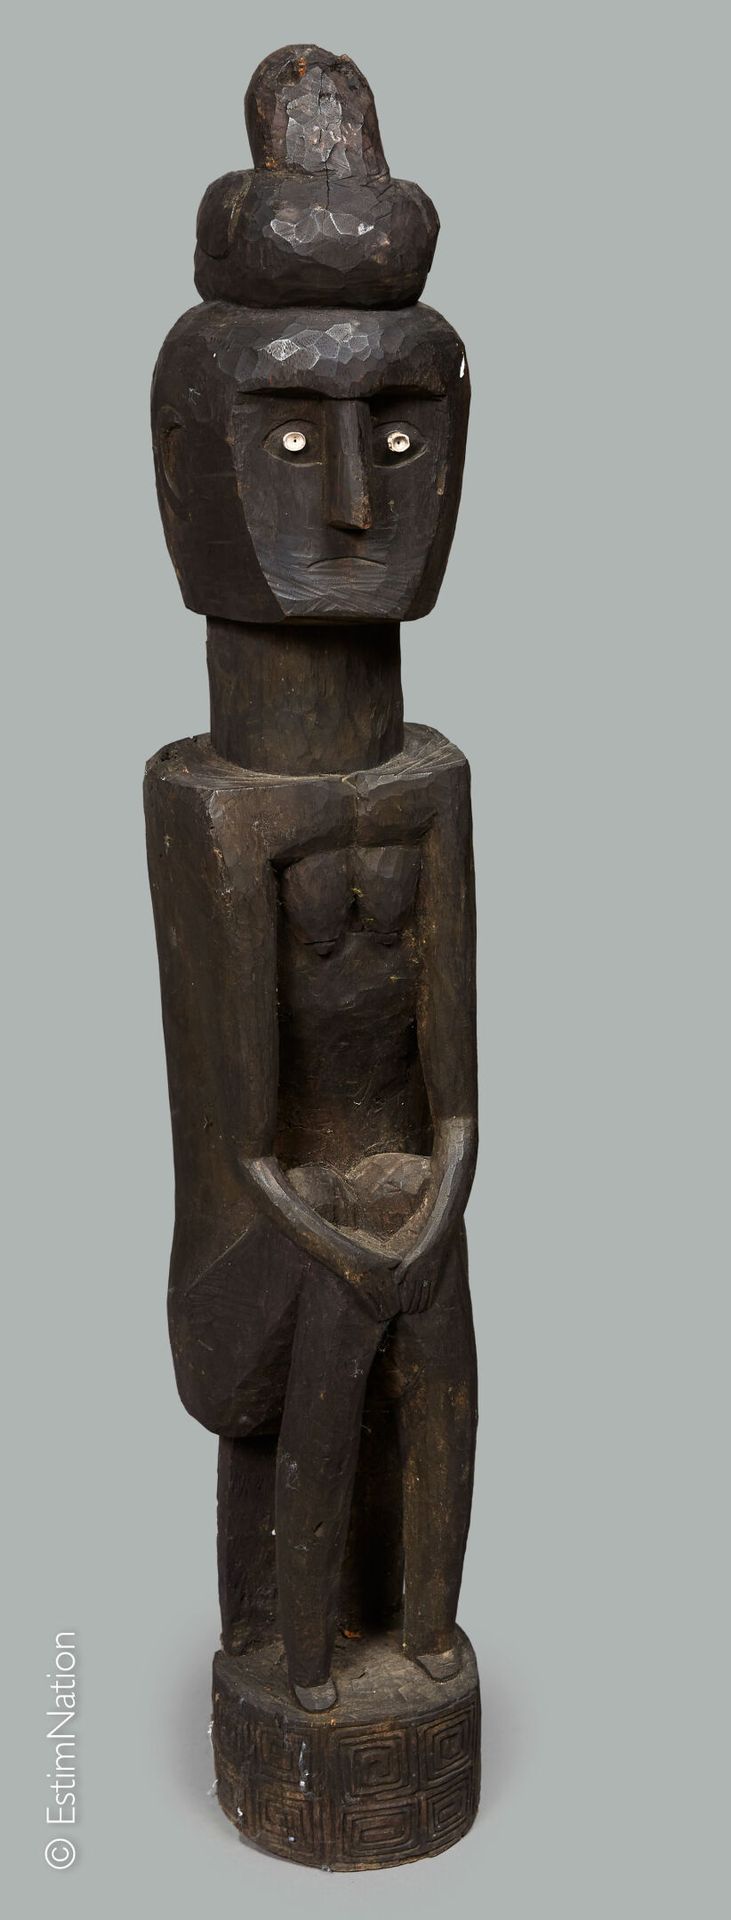 INDONESIE - TIMOR TIMOR



Sujet en bois sculpté à patine sombre représentant un&hellip;